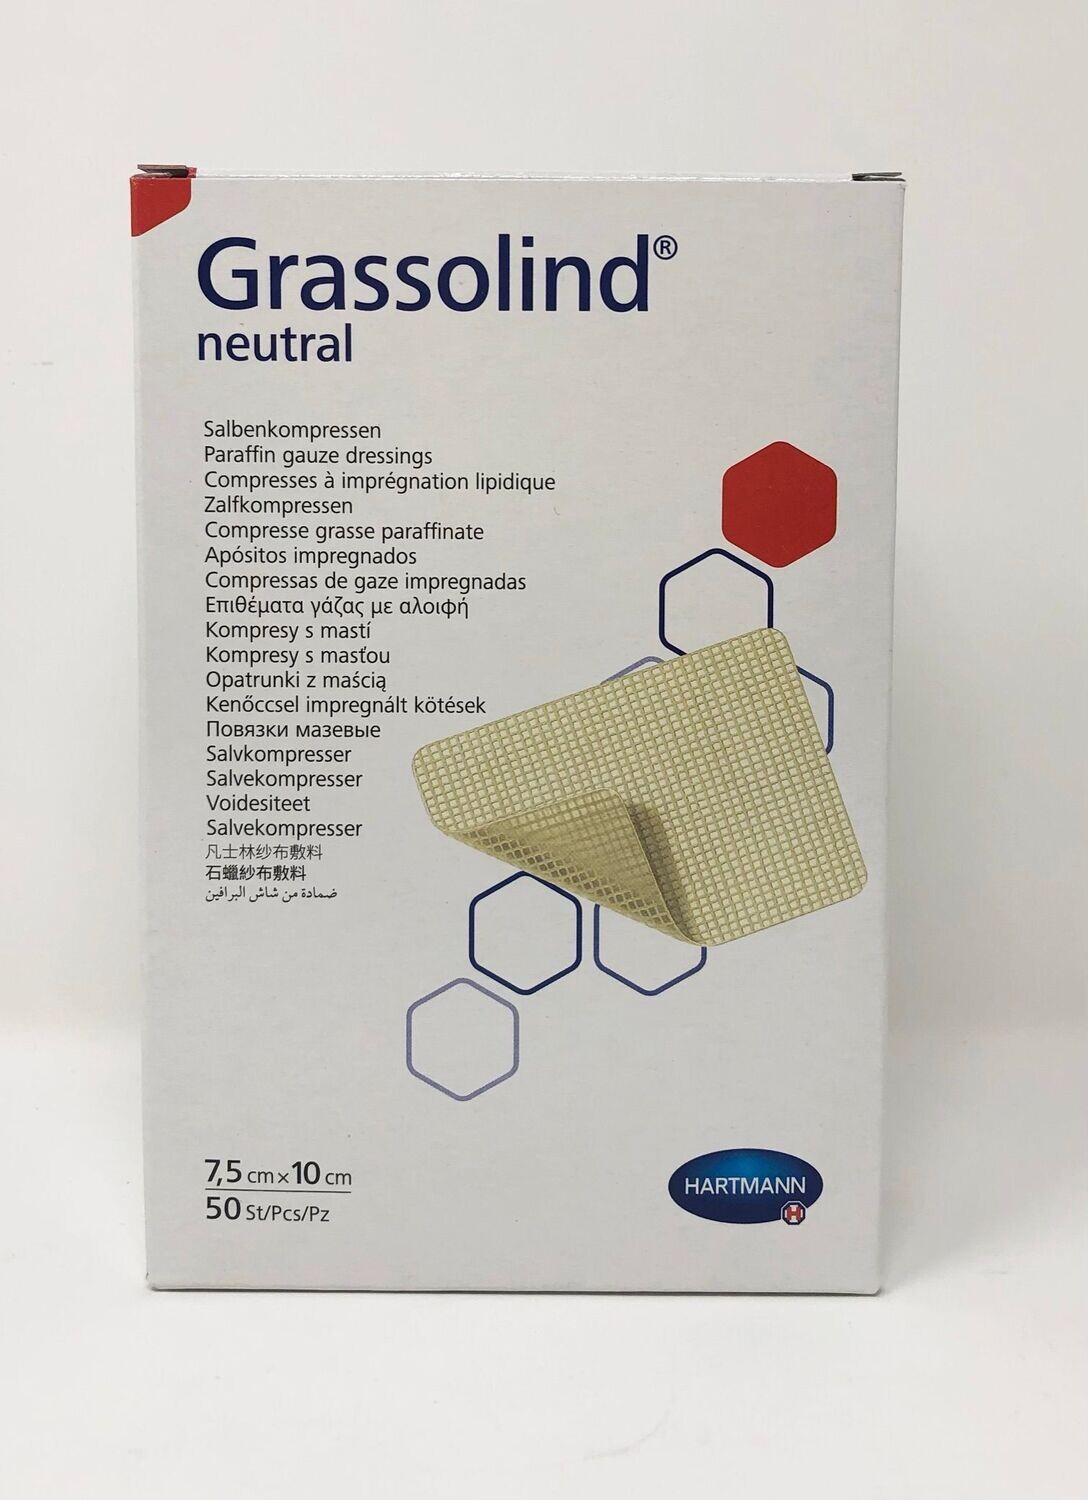 Grassolind neutral steril 10cm x 10cm
Inhalt 50 Stück